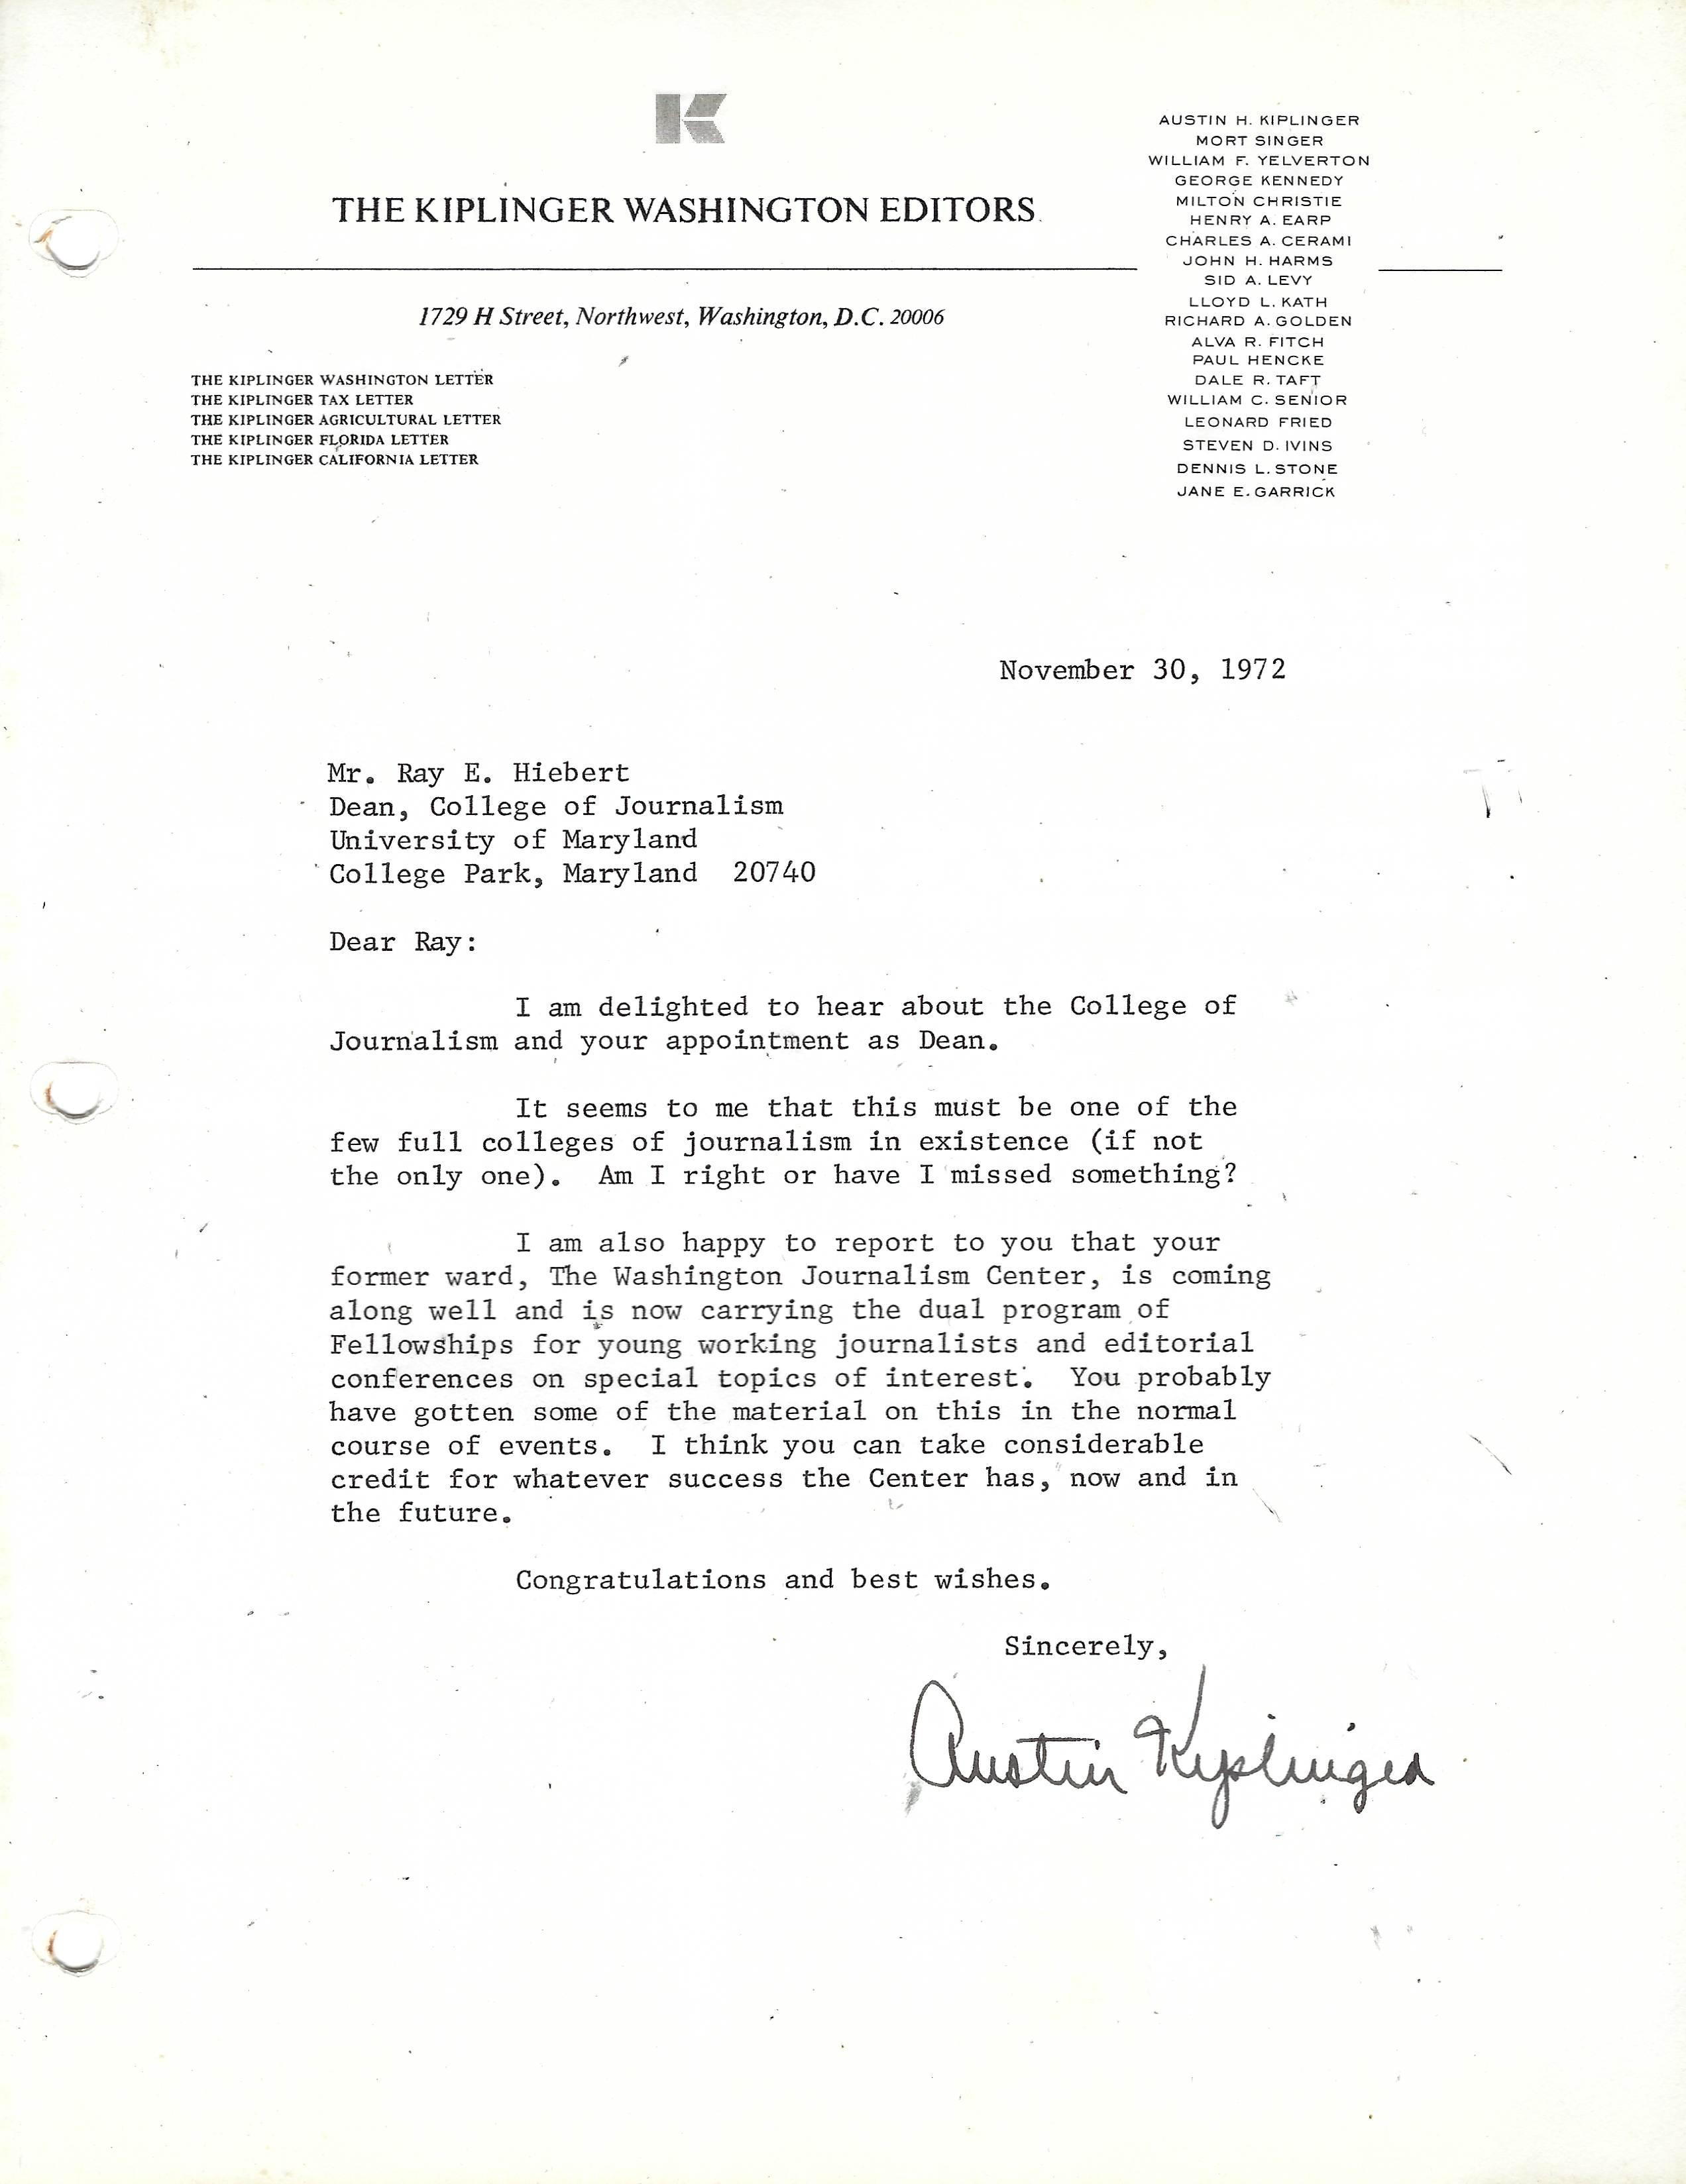 Kiplinger letter to Ray Hiebert